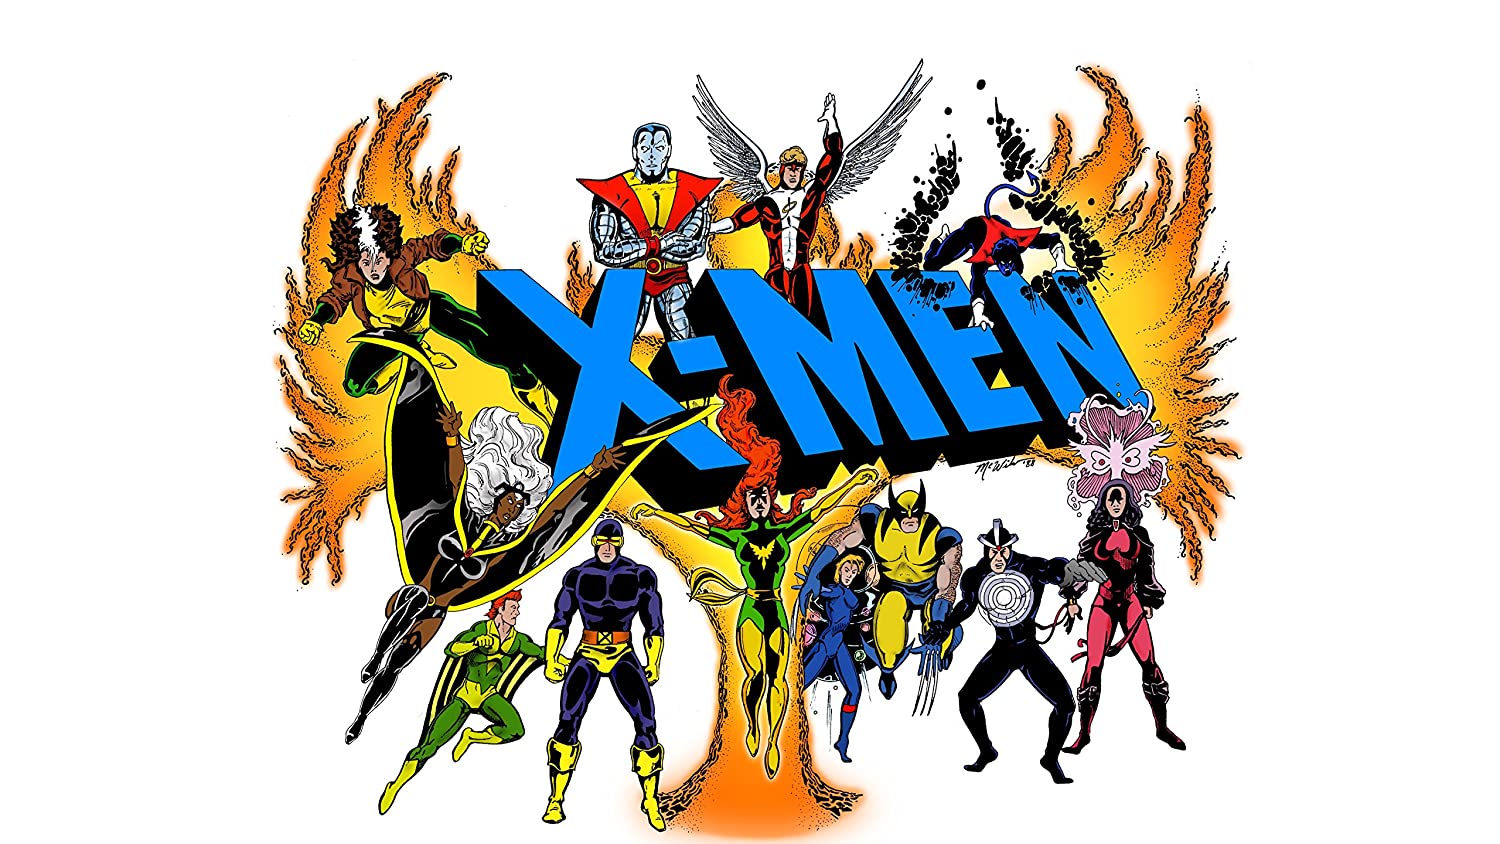 Marvel Comics Poster, X Men Wallpaper, Alex Summers Print, Banshee Wall Art Decor, Colossus Wallpaper, Comics Artwork, Handmade Products